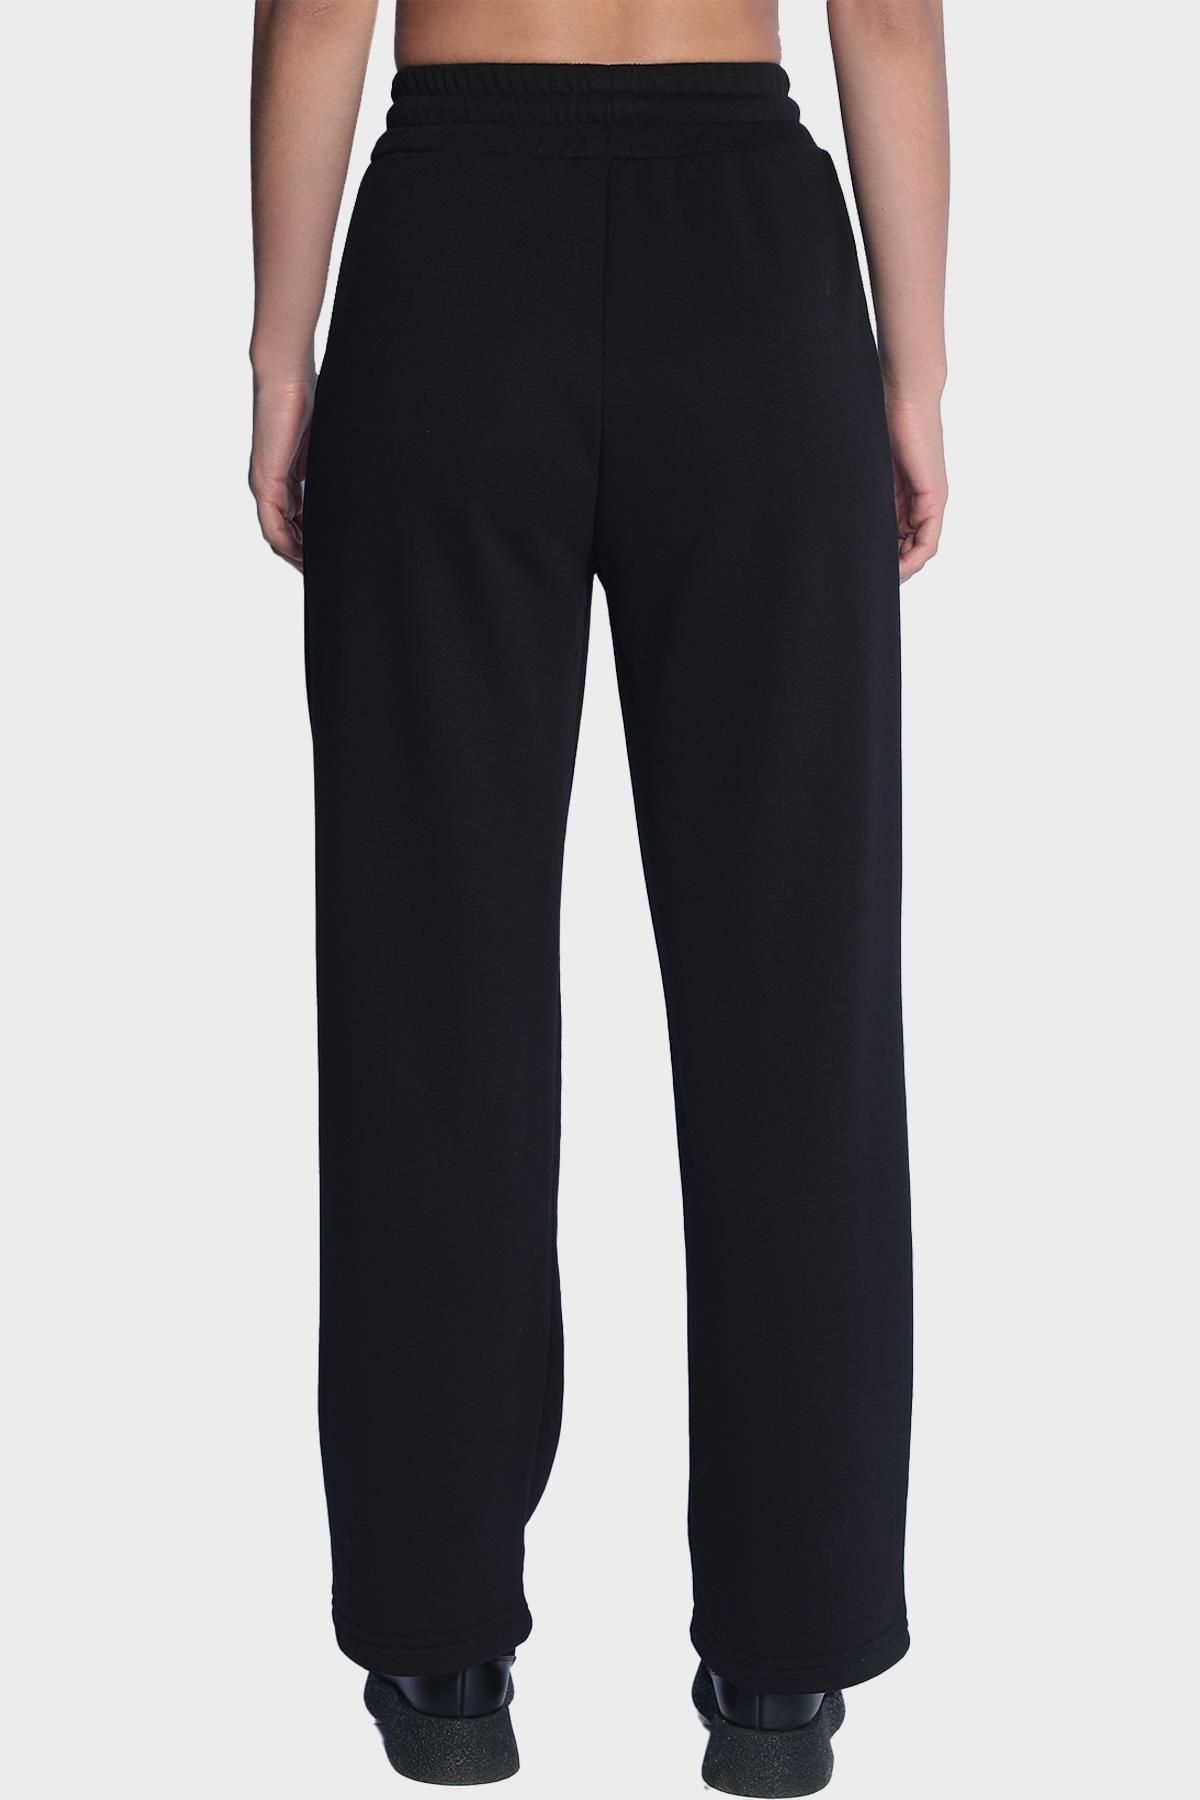 Женские широкие спортивные штаны с эластичной талией - Черный